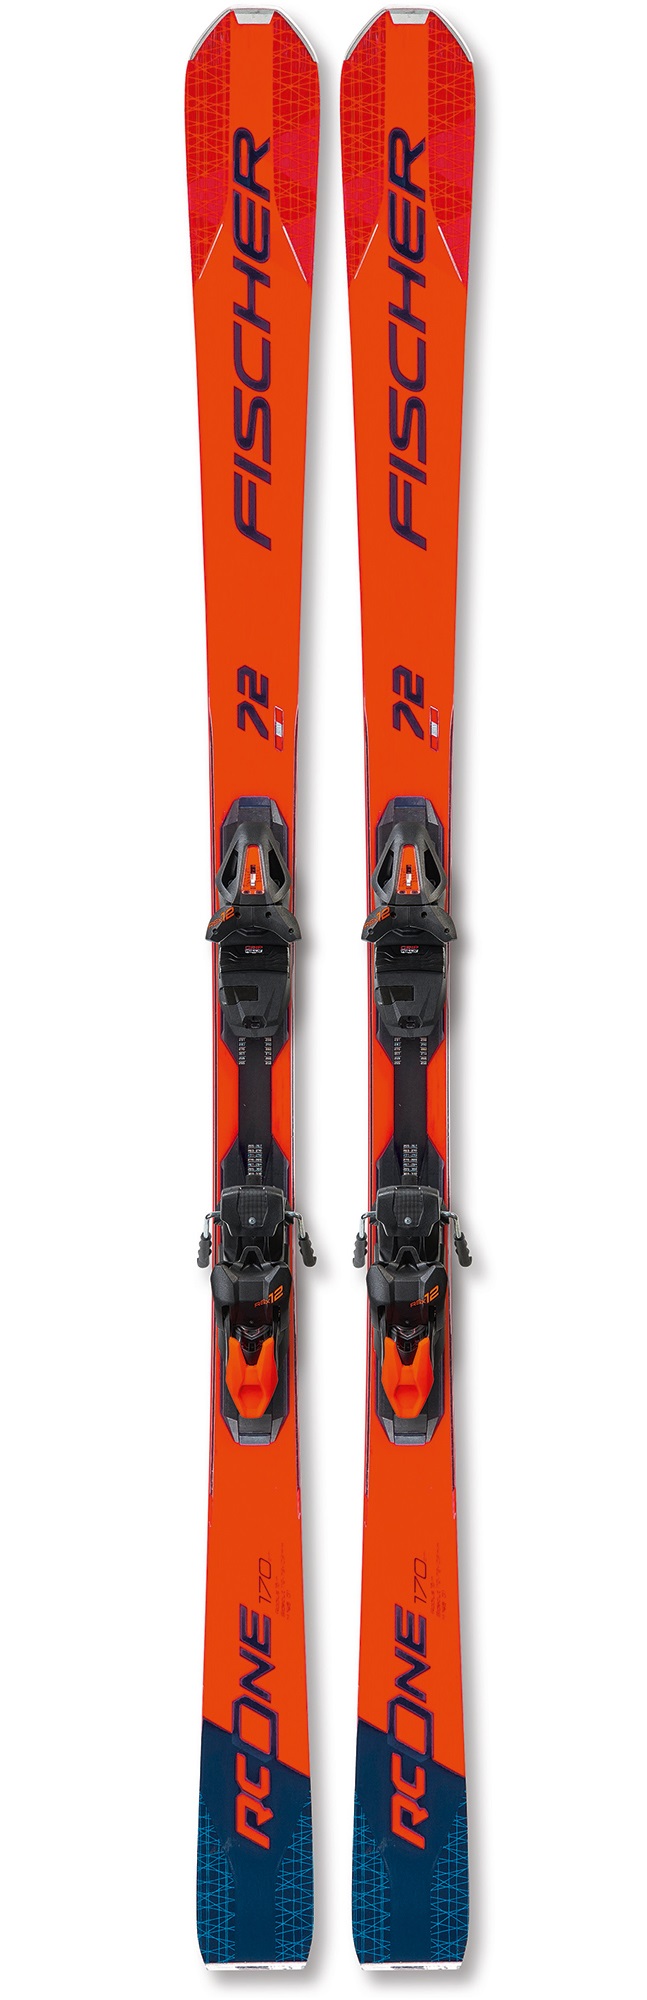 Горные лыжи Fischer RC One 72 MF + RSX Z12 PR 2020 blue/red, 170 см